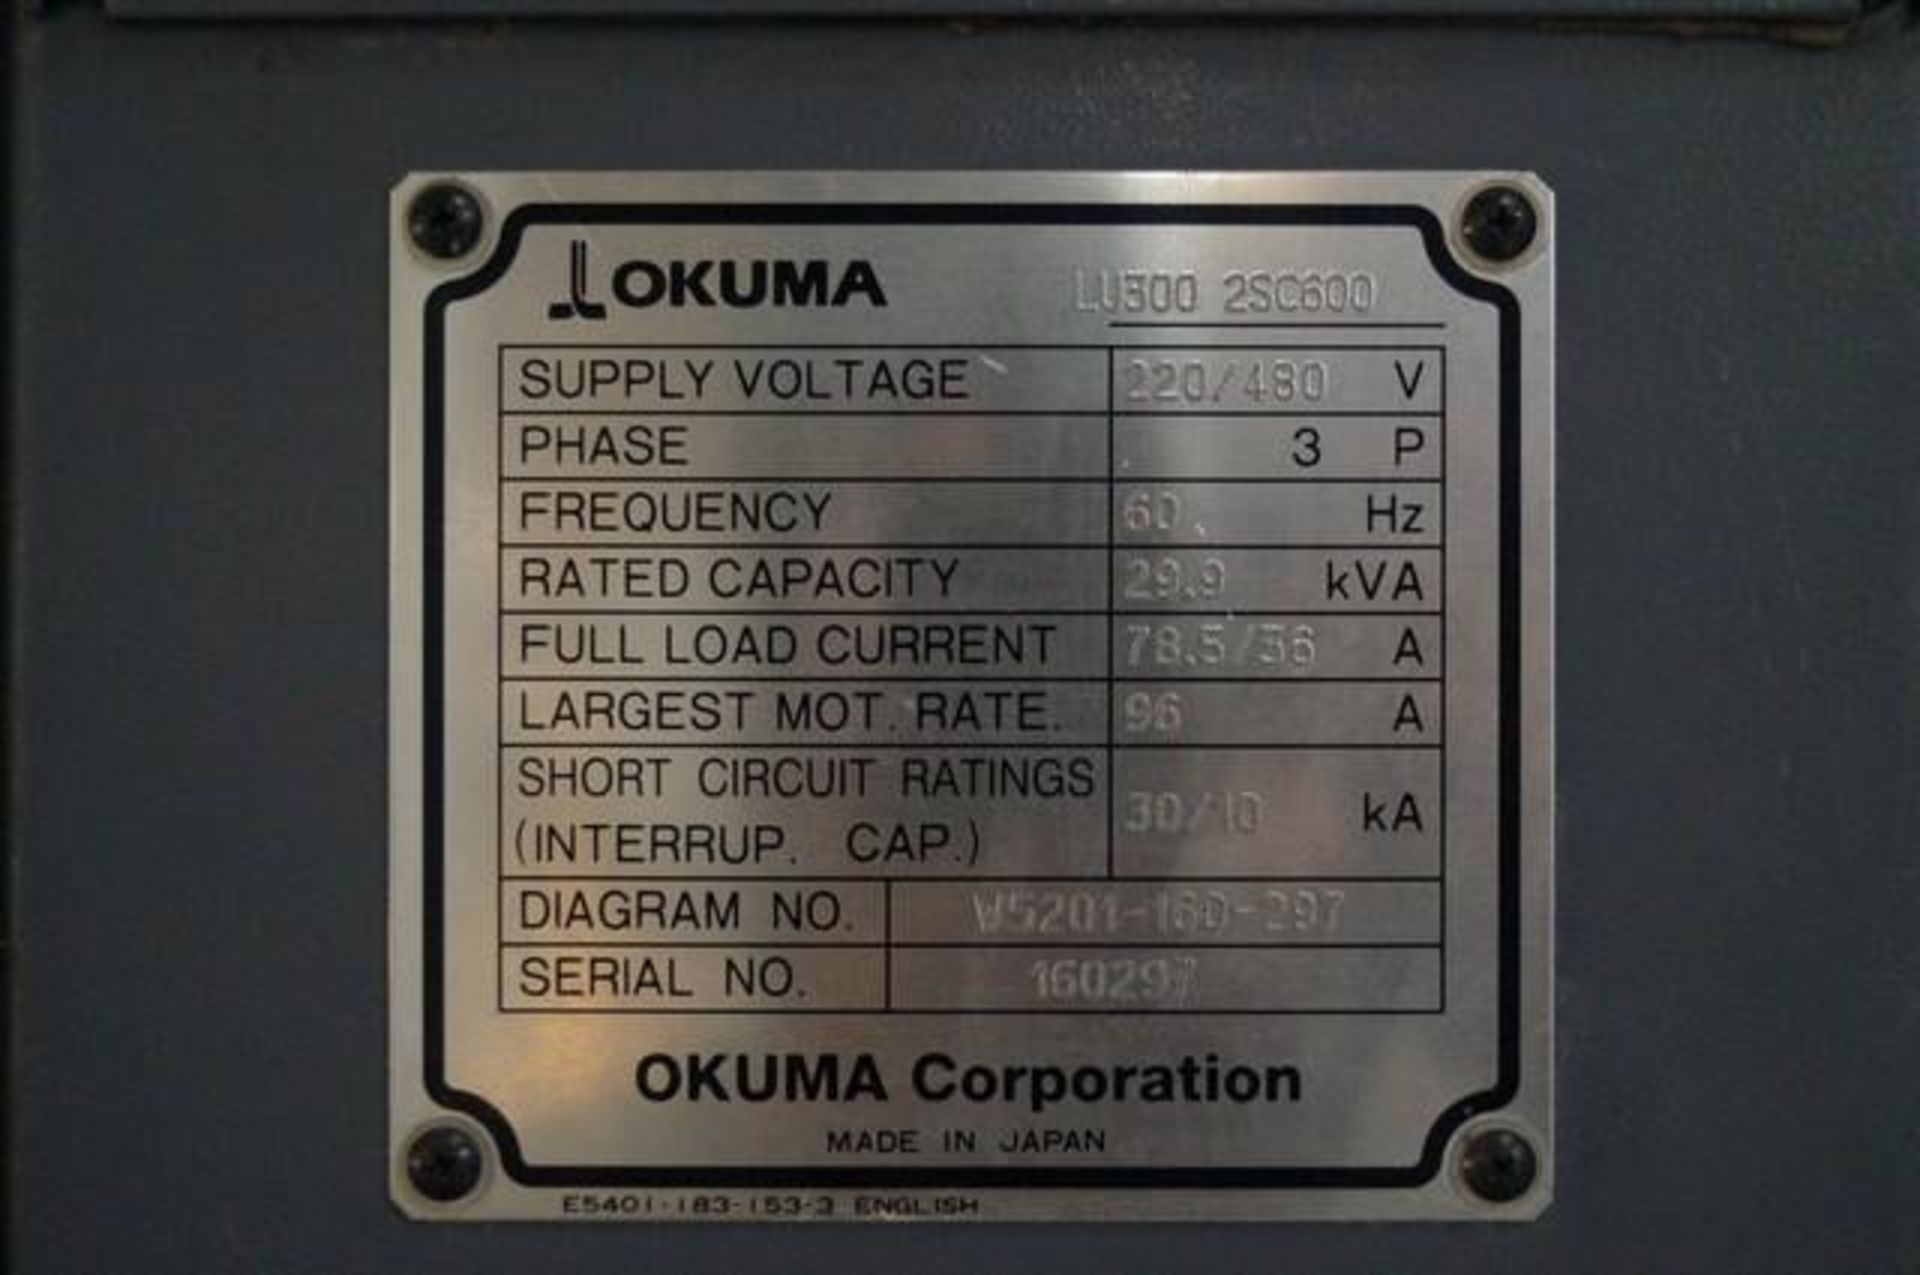 2011 OKUMA LU-300-2SC Twin Turret CNC Horizontal Turning Center - Image 6 of 6